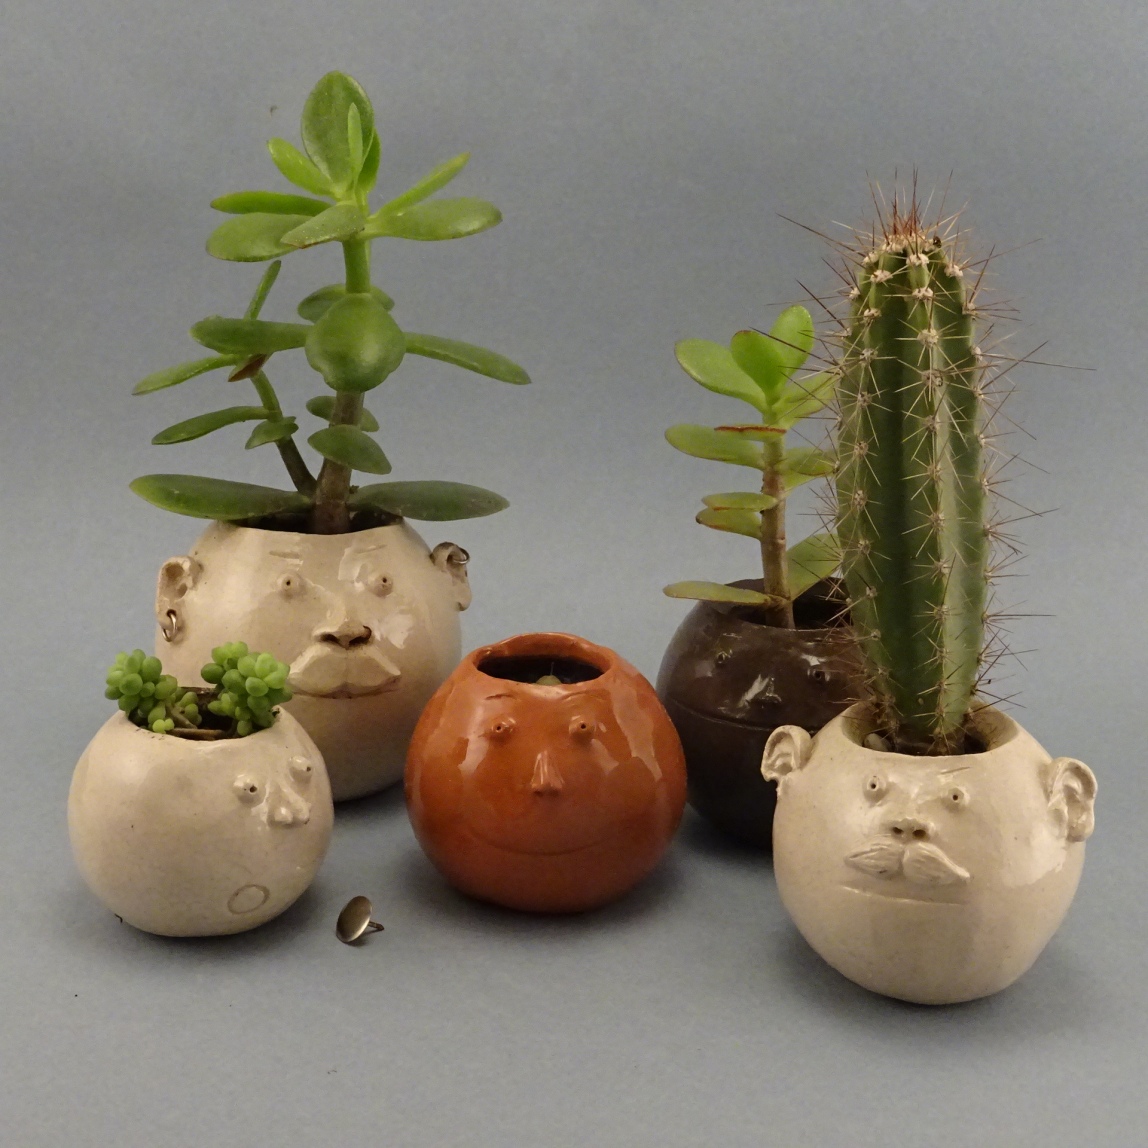 Petits pots têtes rondes, avec ou sans moustache, avec ou sans piercing, plantés de succulentes. Vendus, mais des pots similaires sont toujours disponibles.